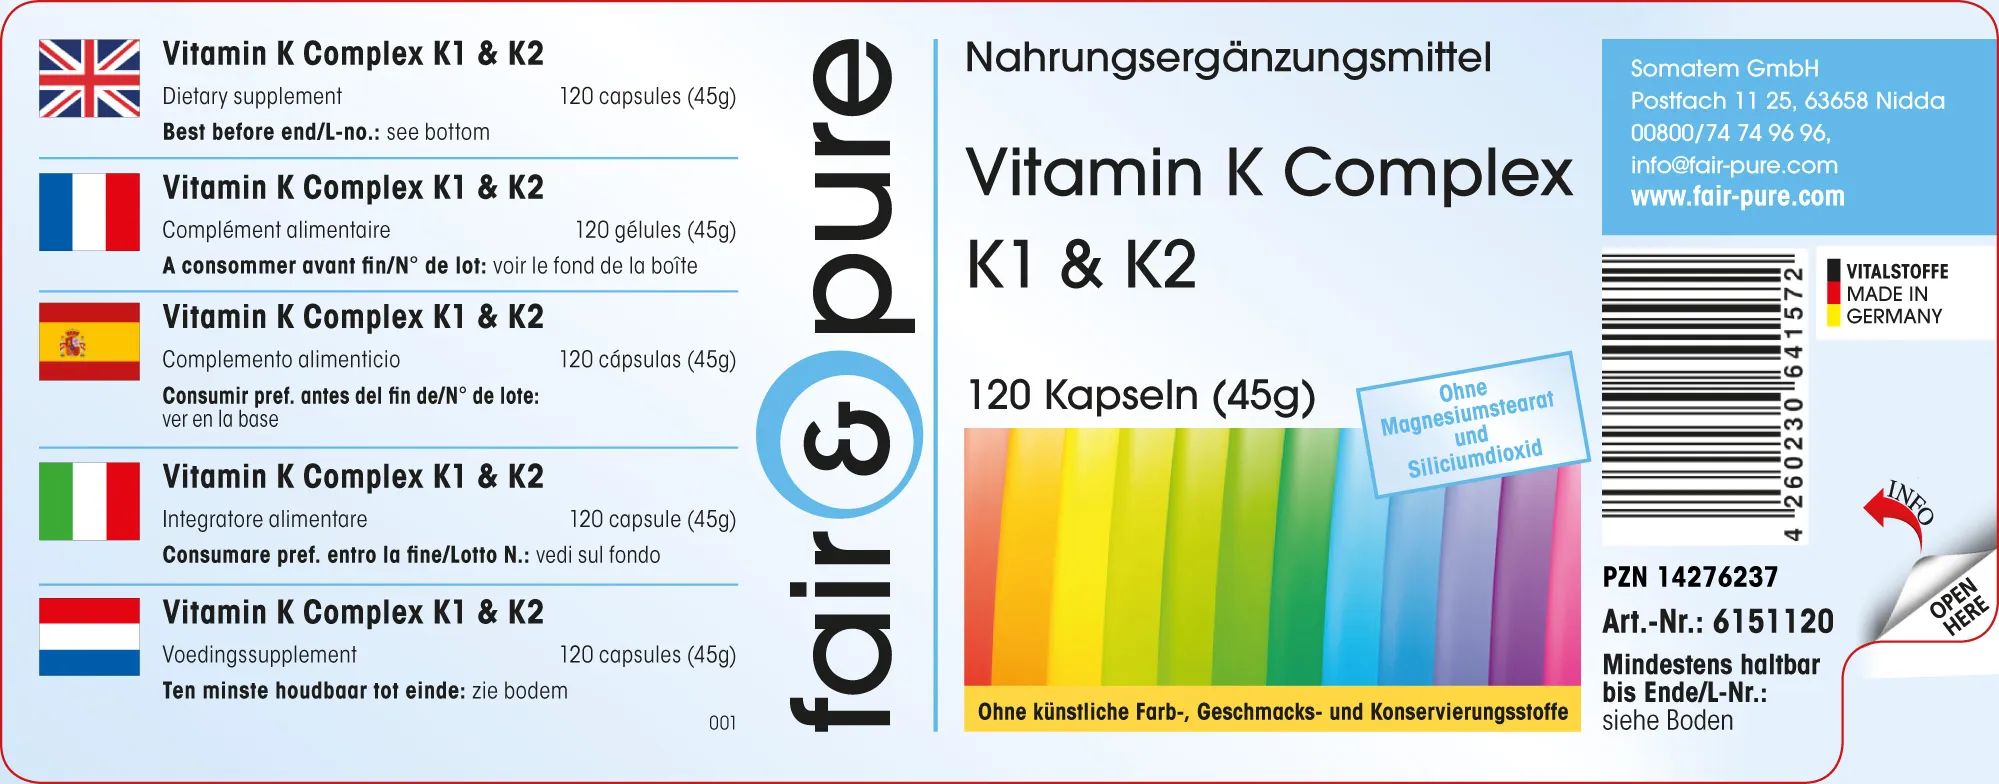 Vitamine K Complexe K1 & K2